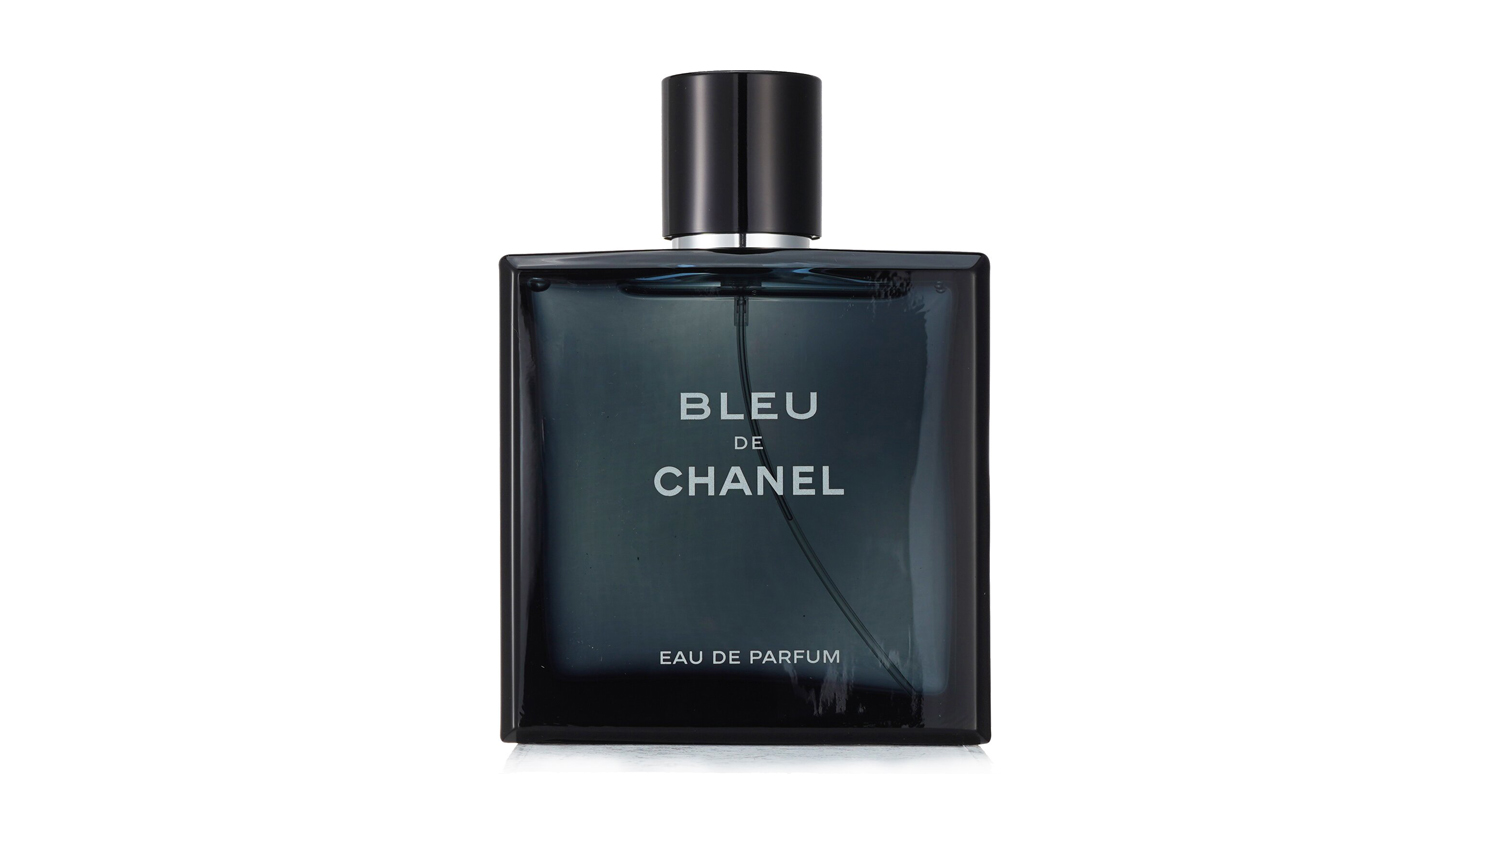 CHANEL BLEU DE CHANEL Eau de Parfum Spray  BLEU DE CHANEL